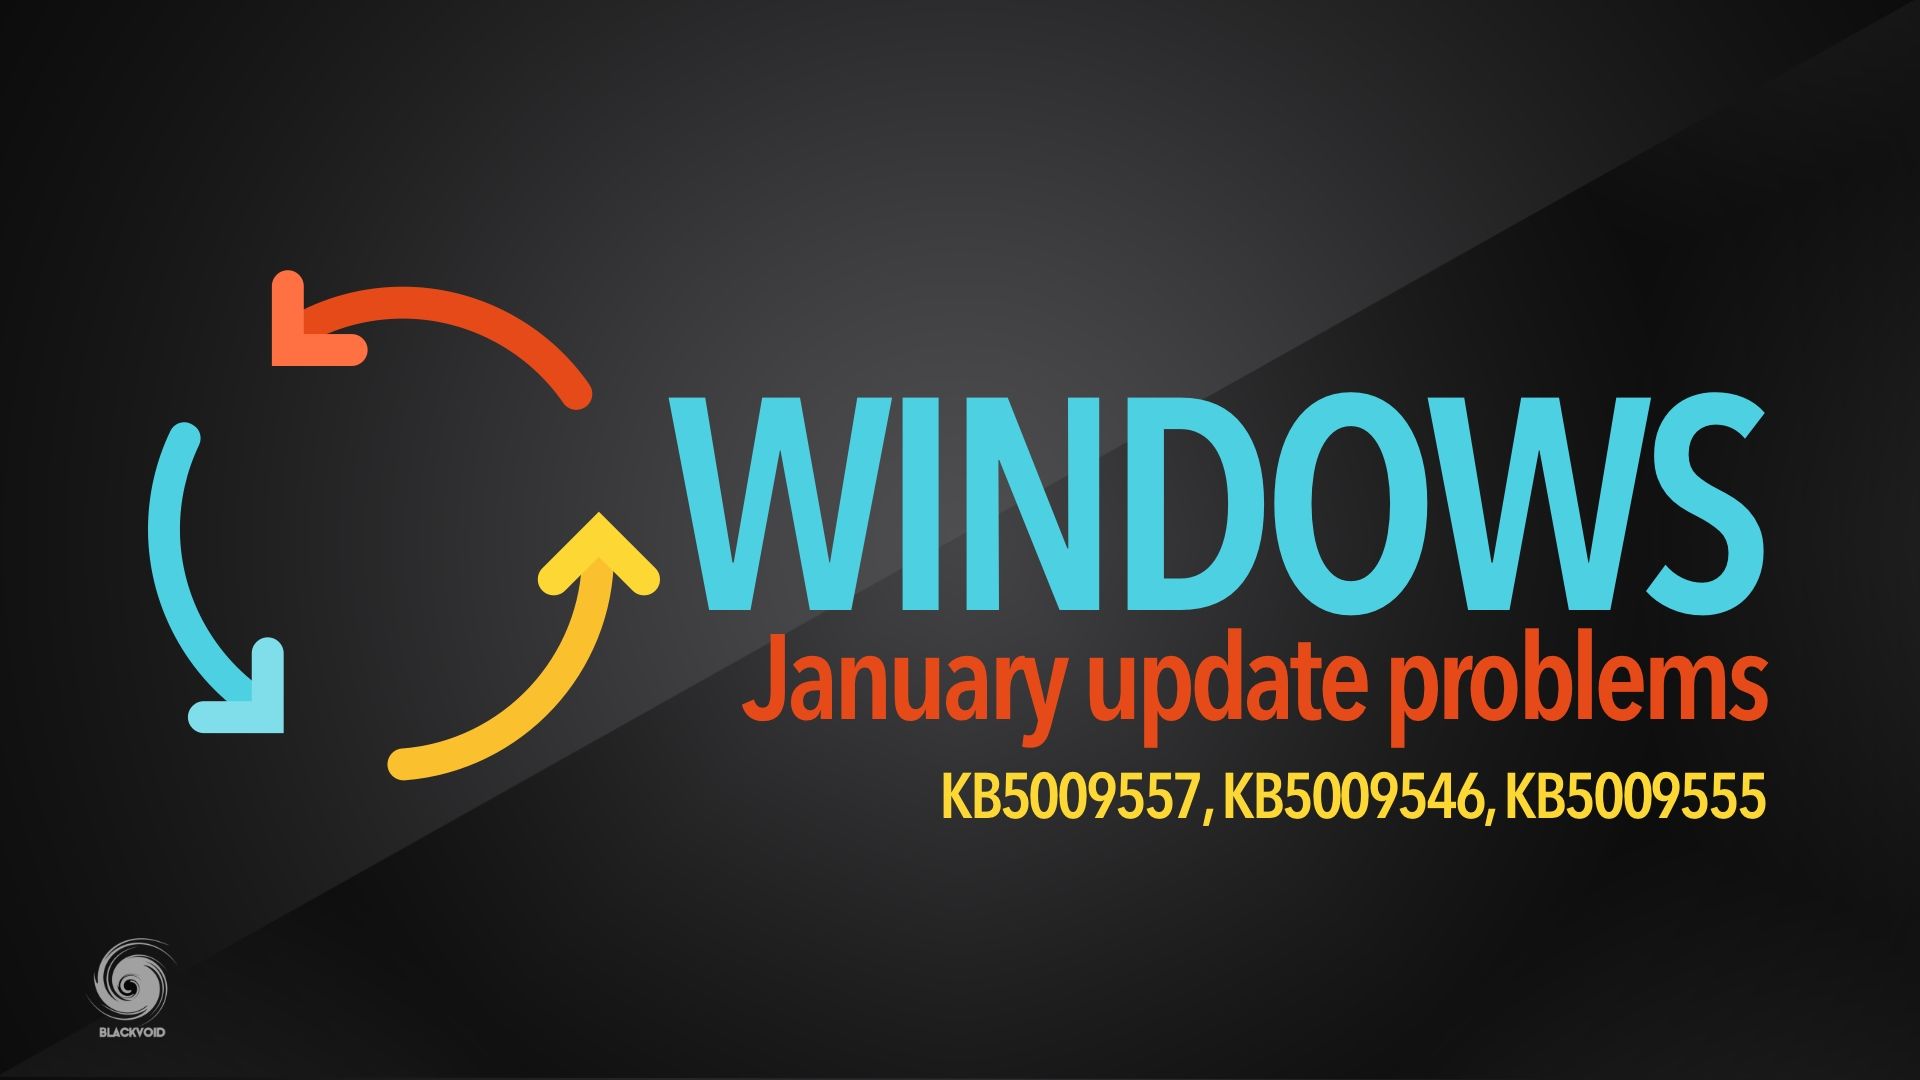 Windows January update problems - KB5009557, KB5009546, KB5009555